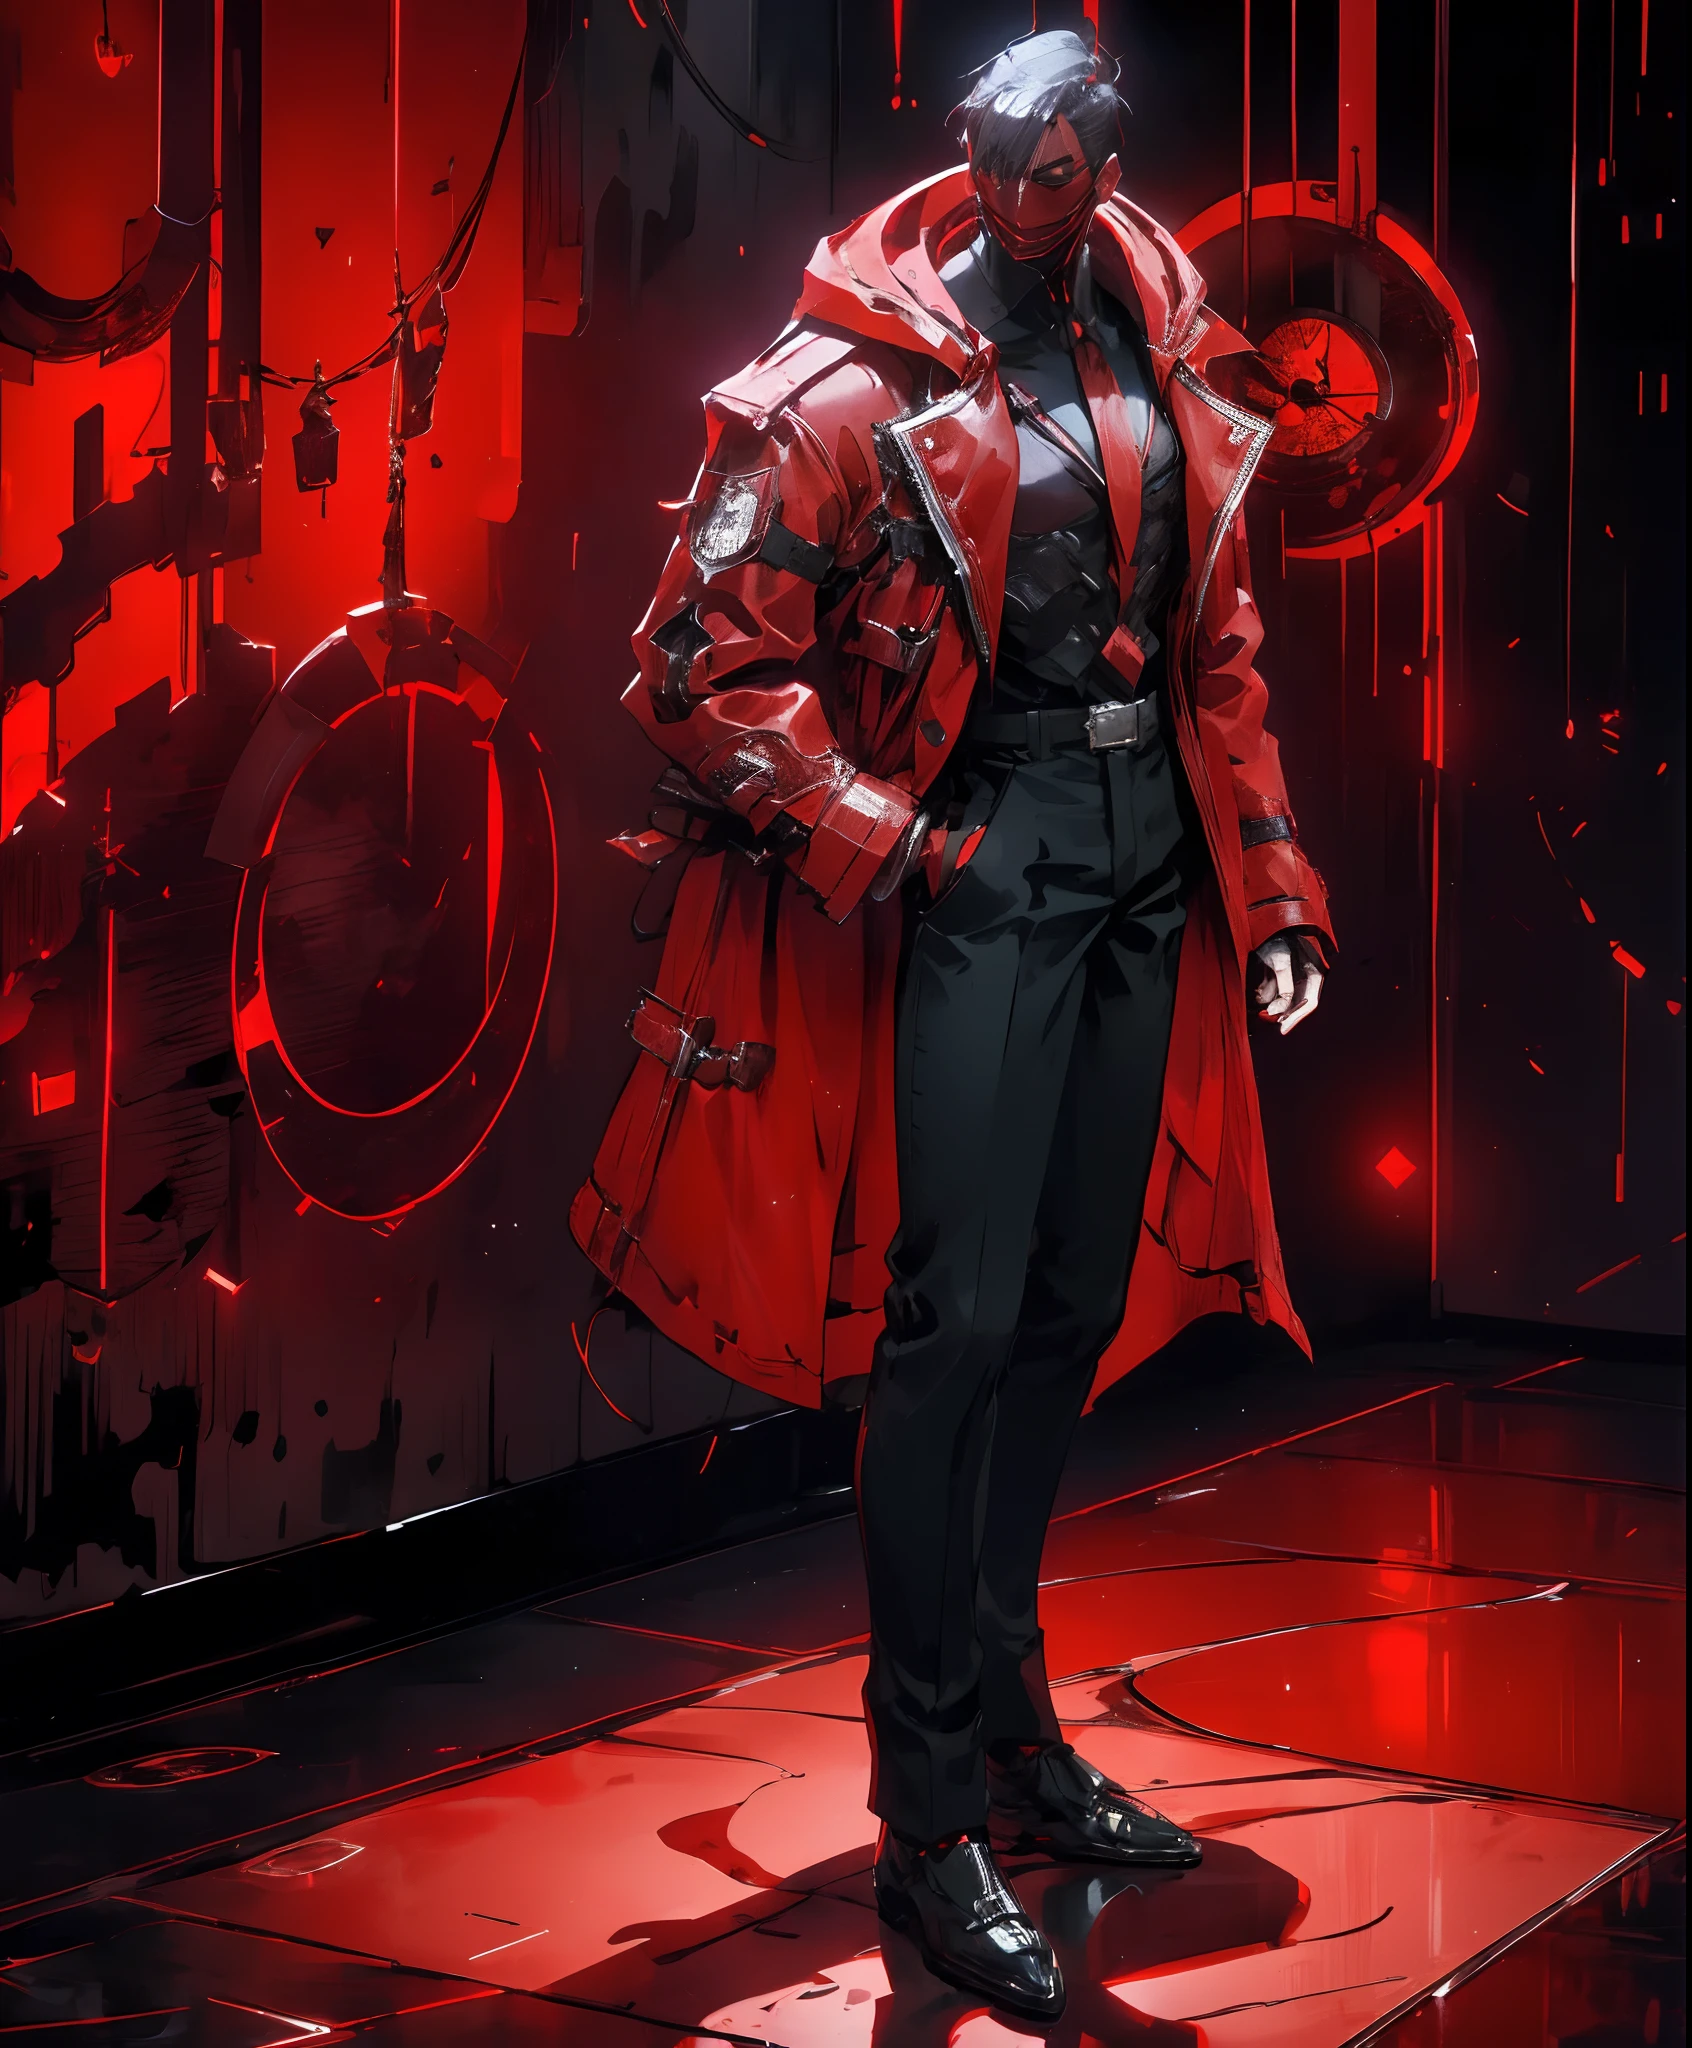 un hombre con una chaqueta roja y pantalones negros parado en una habitación oscura, vistiendo una túnica roja de cultista, traje carmesí, personaje de mortal kombat, como personaje de tekken, personaje del juego de lucha, asesino ciberpunk, mago encapuchado rojo, trajes ciberpunk, ropa carmesí, el ninja rojo, vistiendo una armadura de asesino de cuero, un asesino adolescente nervioso, chaqueta roja genial, matón callejero cyberpunk